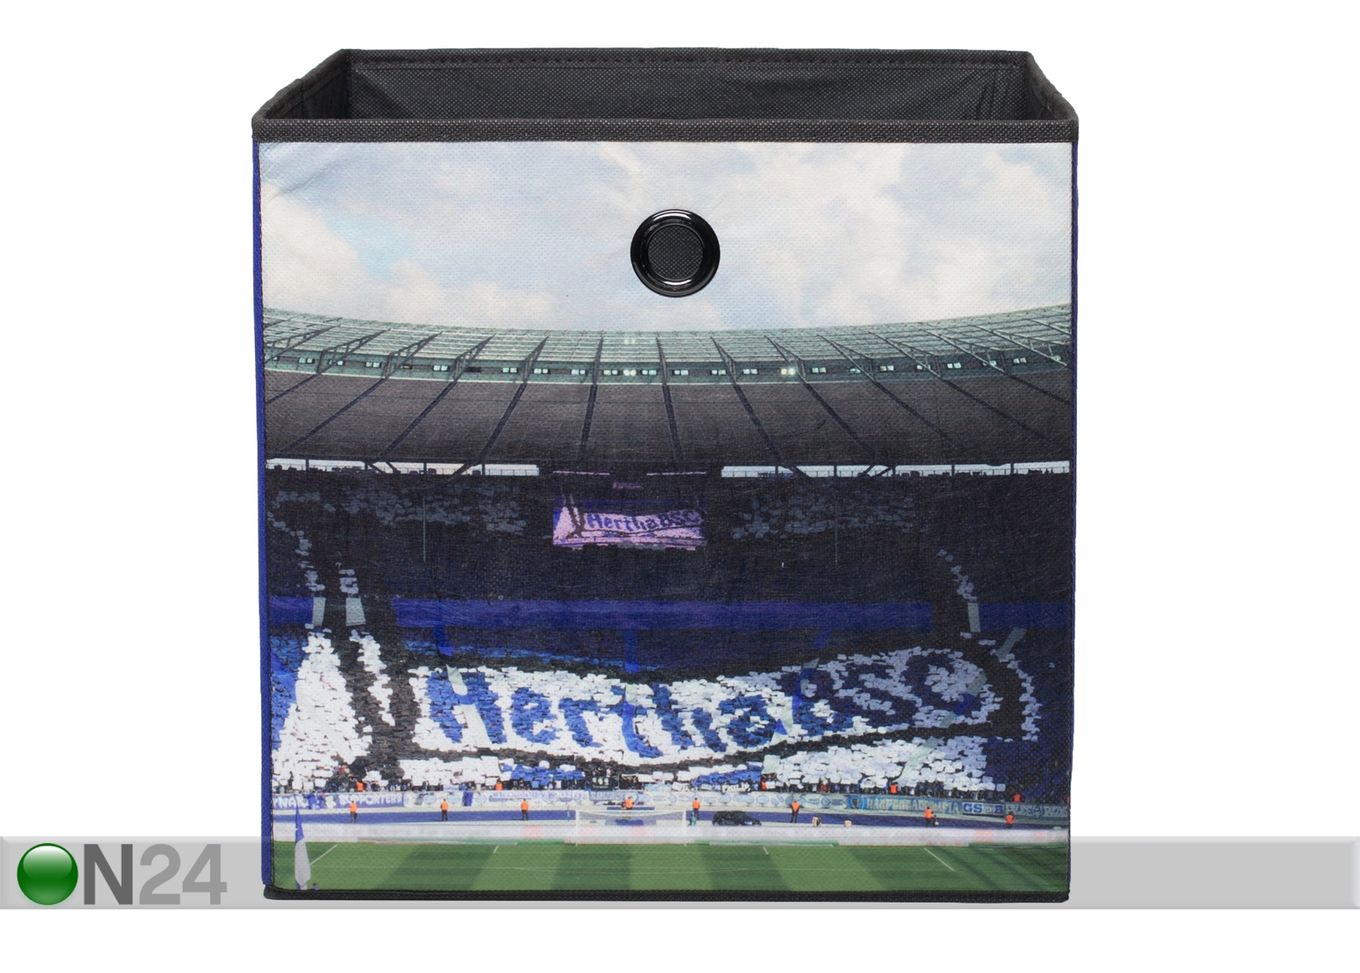 Karp Hertha BSC suurendatud